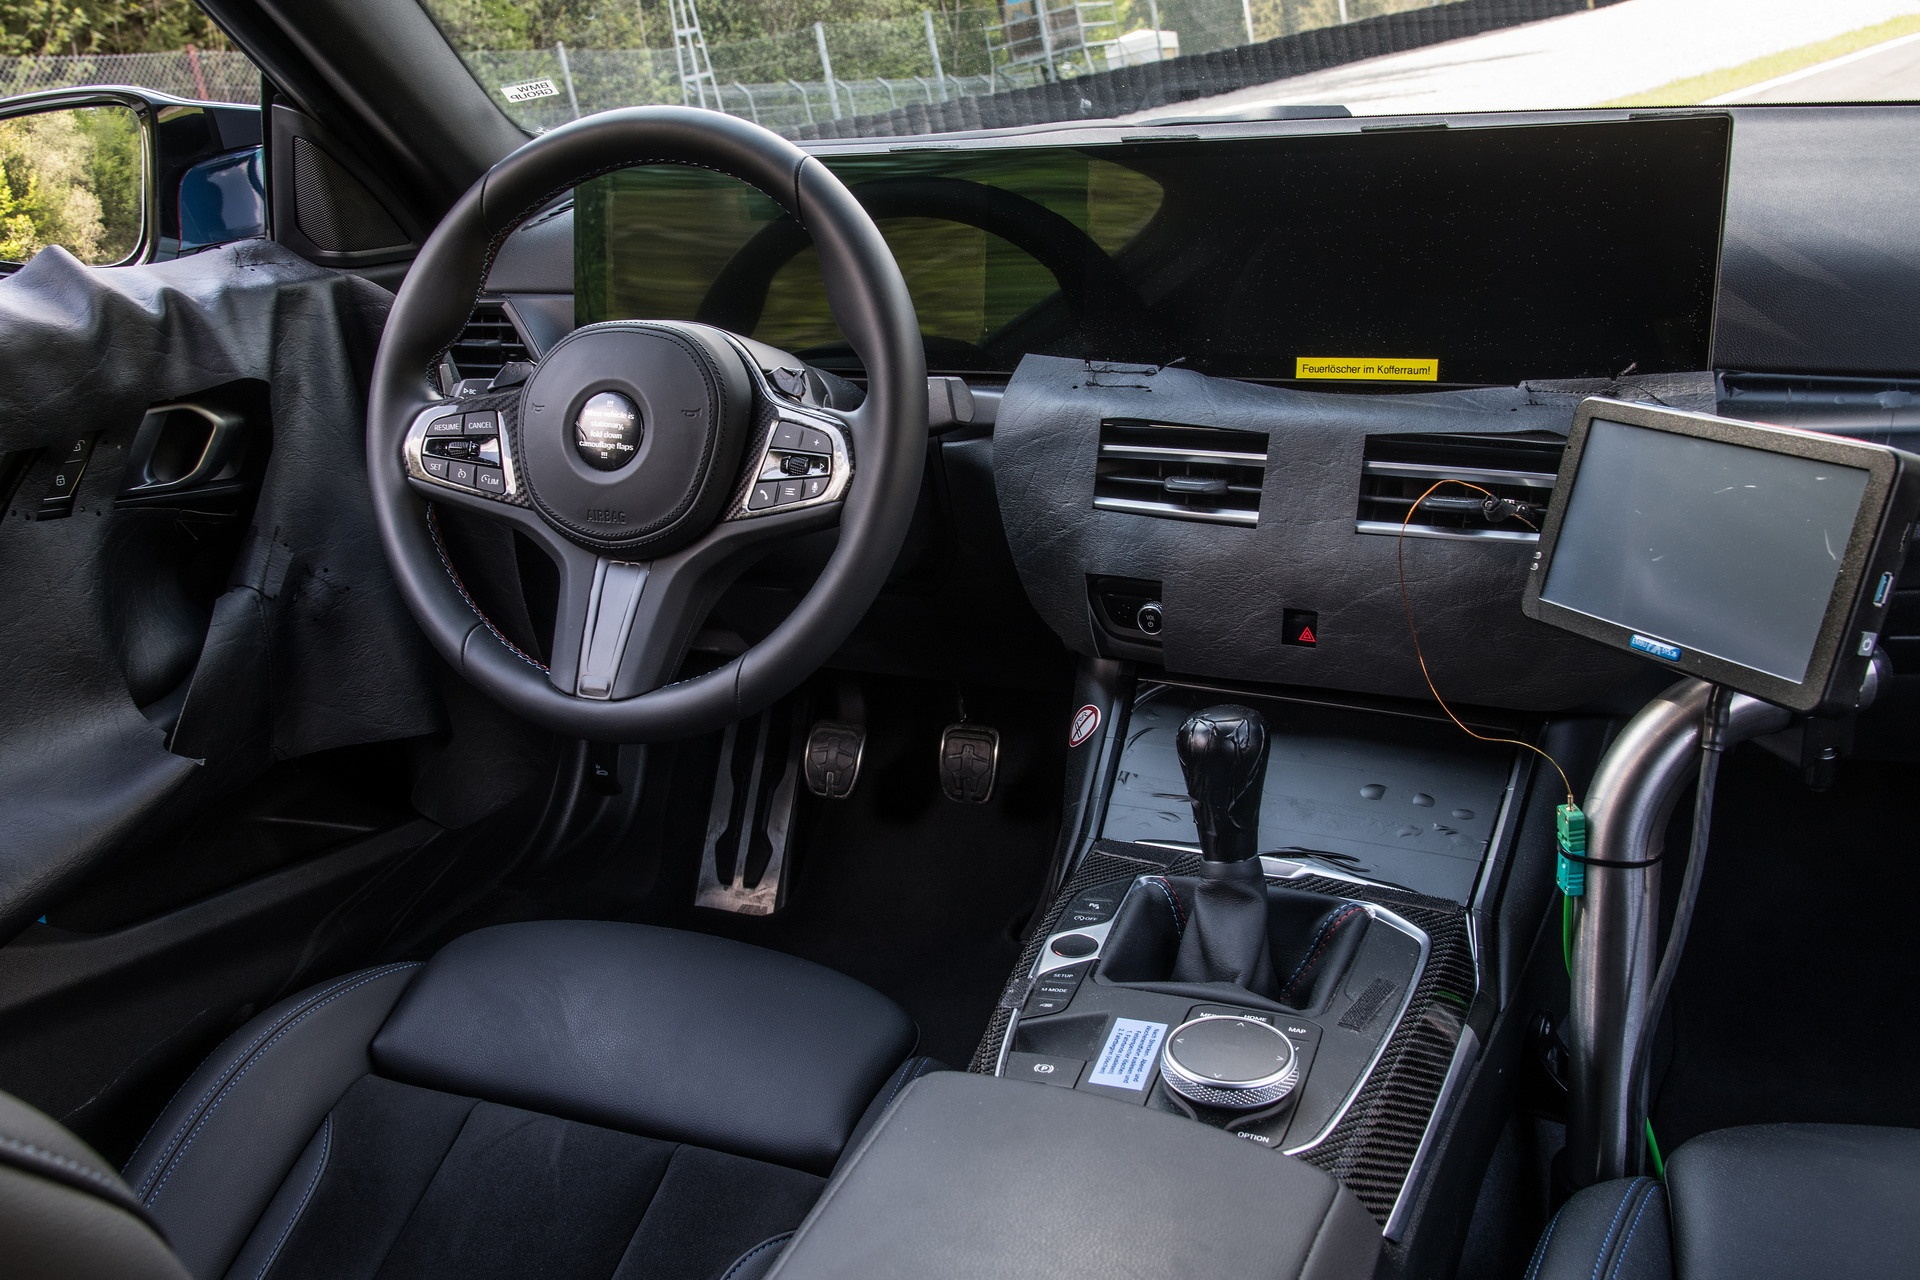 BMW M2 thế hệ mới lộ thiết kế đầy tranh cãi - ảnh 10